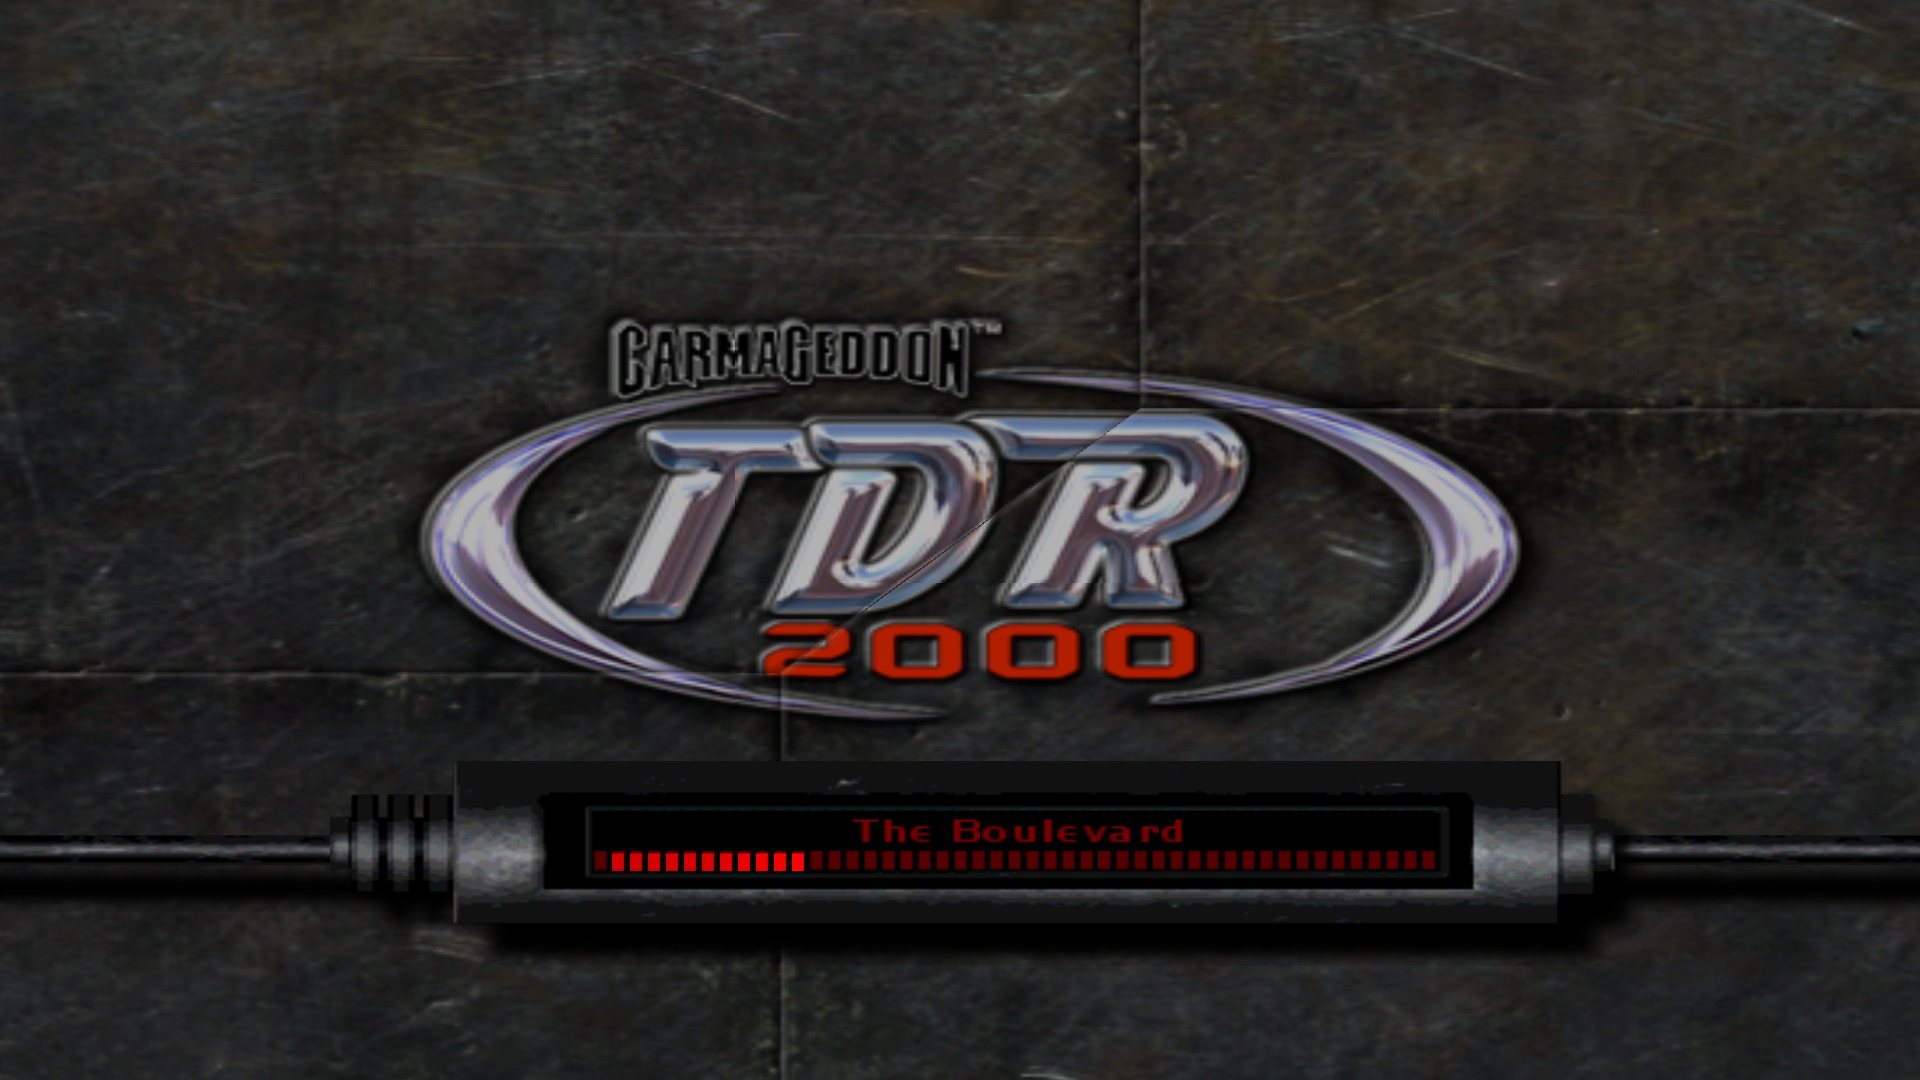 [$ 3.13] Carmageddon TDR 2000 Steam Gift